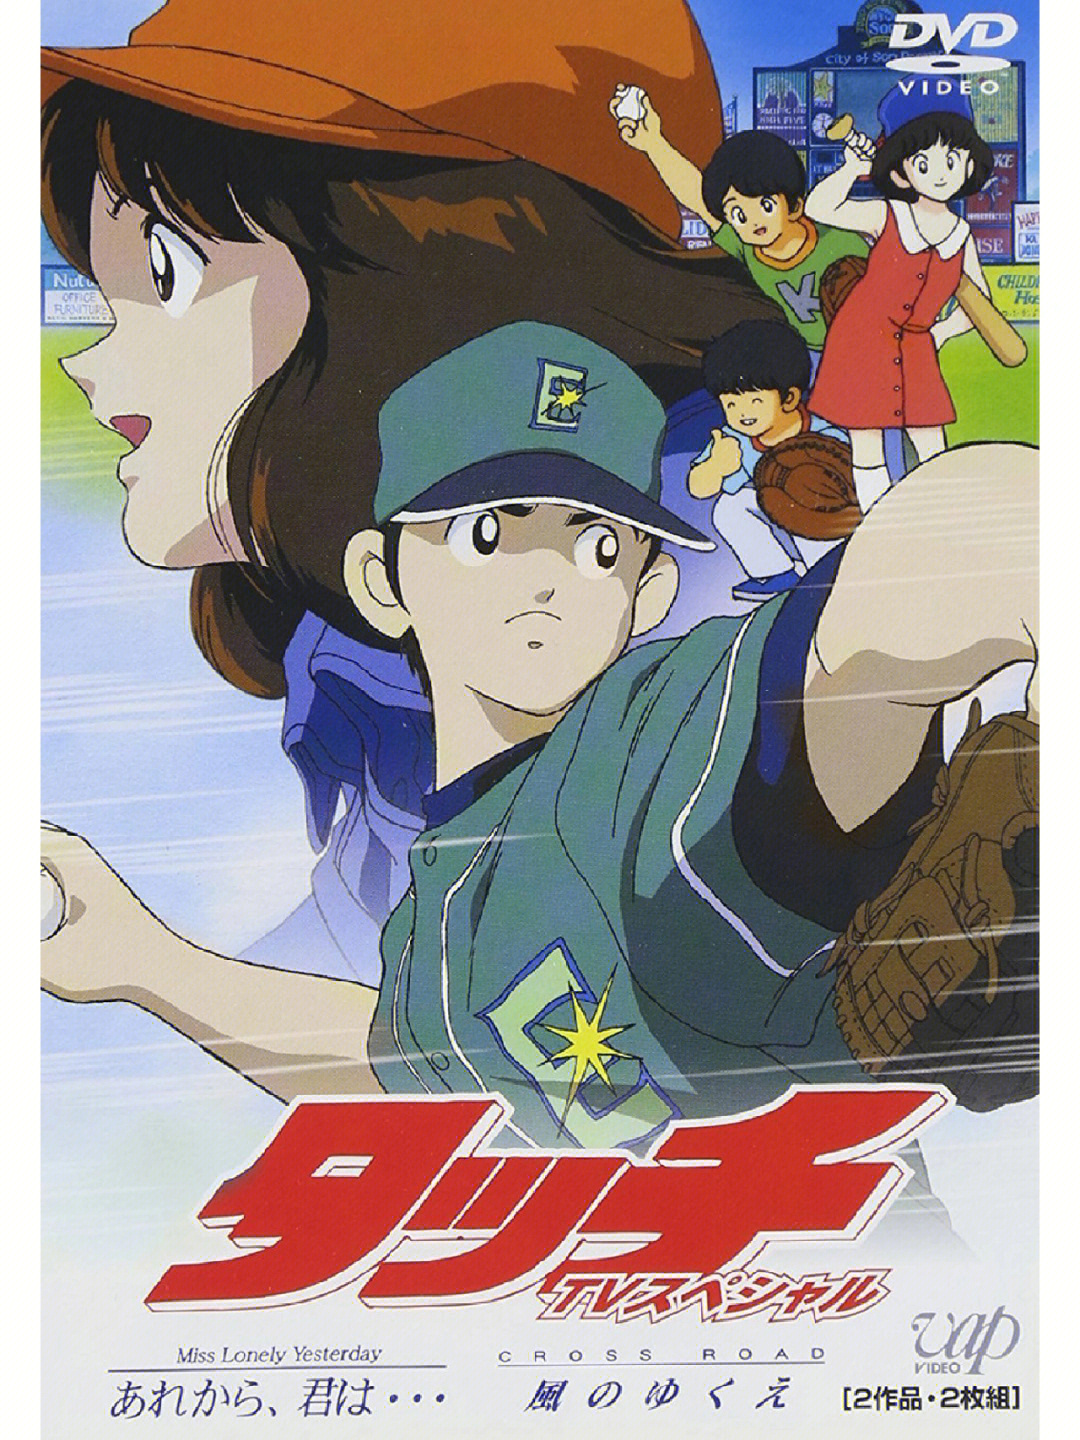 日本动画推荐:《棒球英豪》台配国语